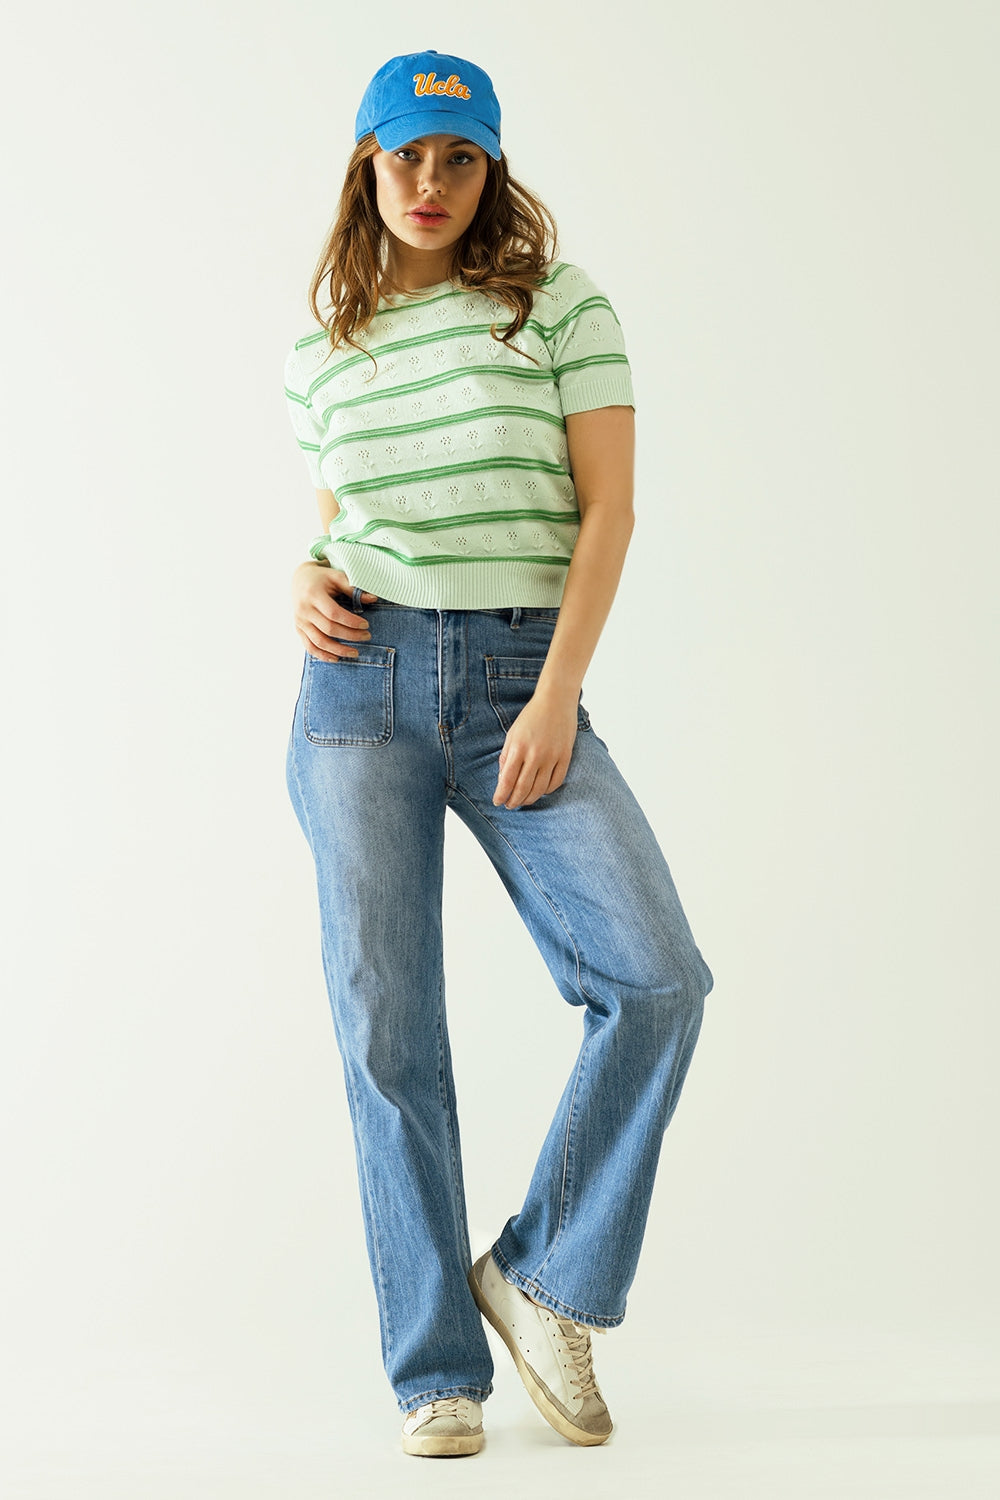 Jeans a gamba larga con chiusura anteriore con bottoni metallici e tasche anteriori